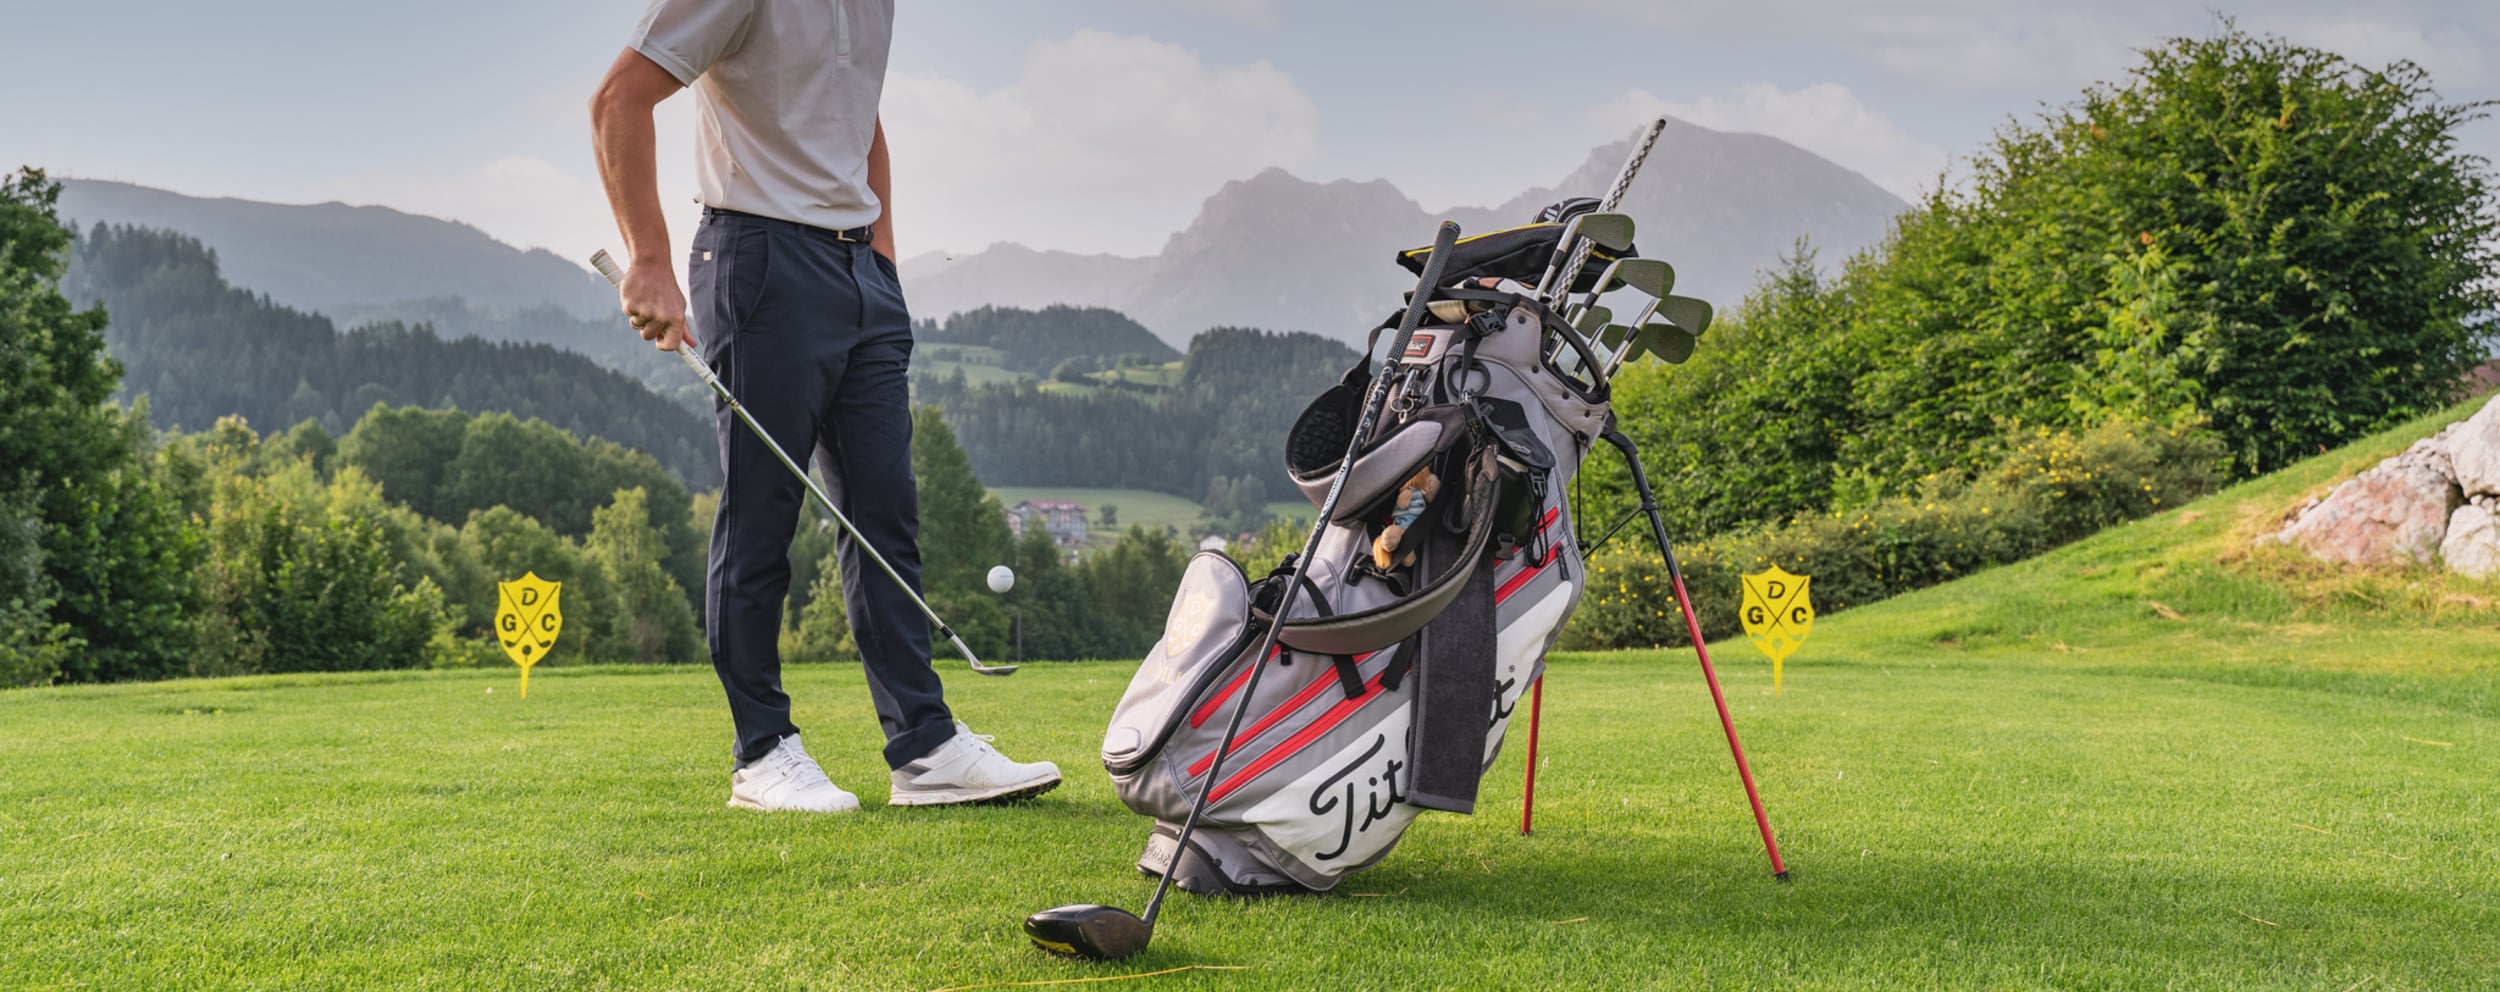 Golfschläger kaufen: Unsere Tipps